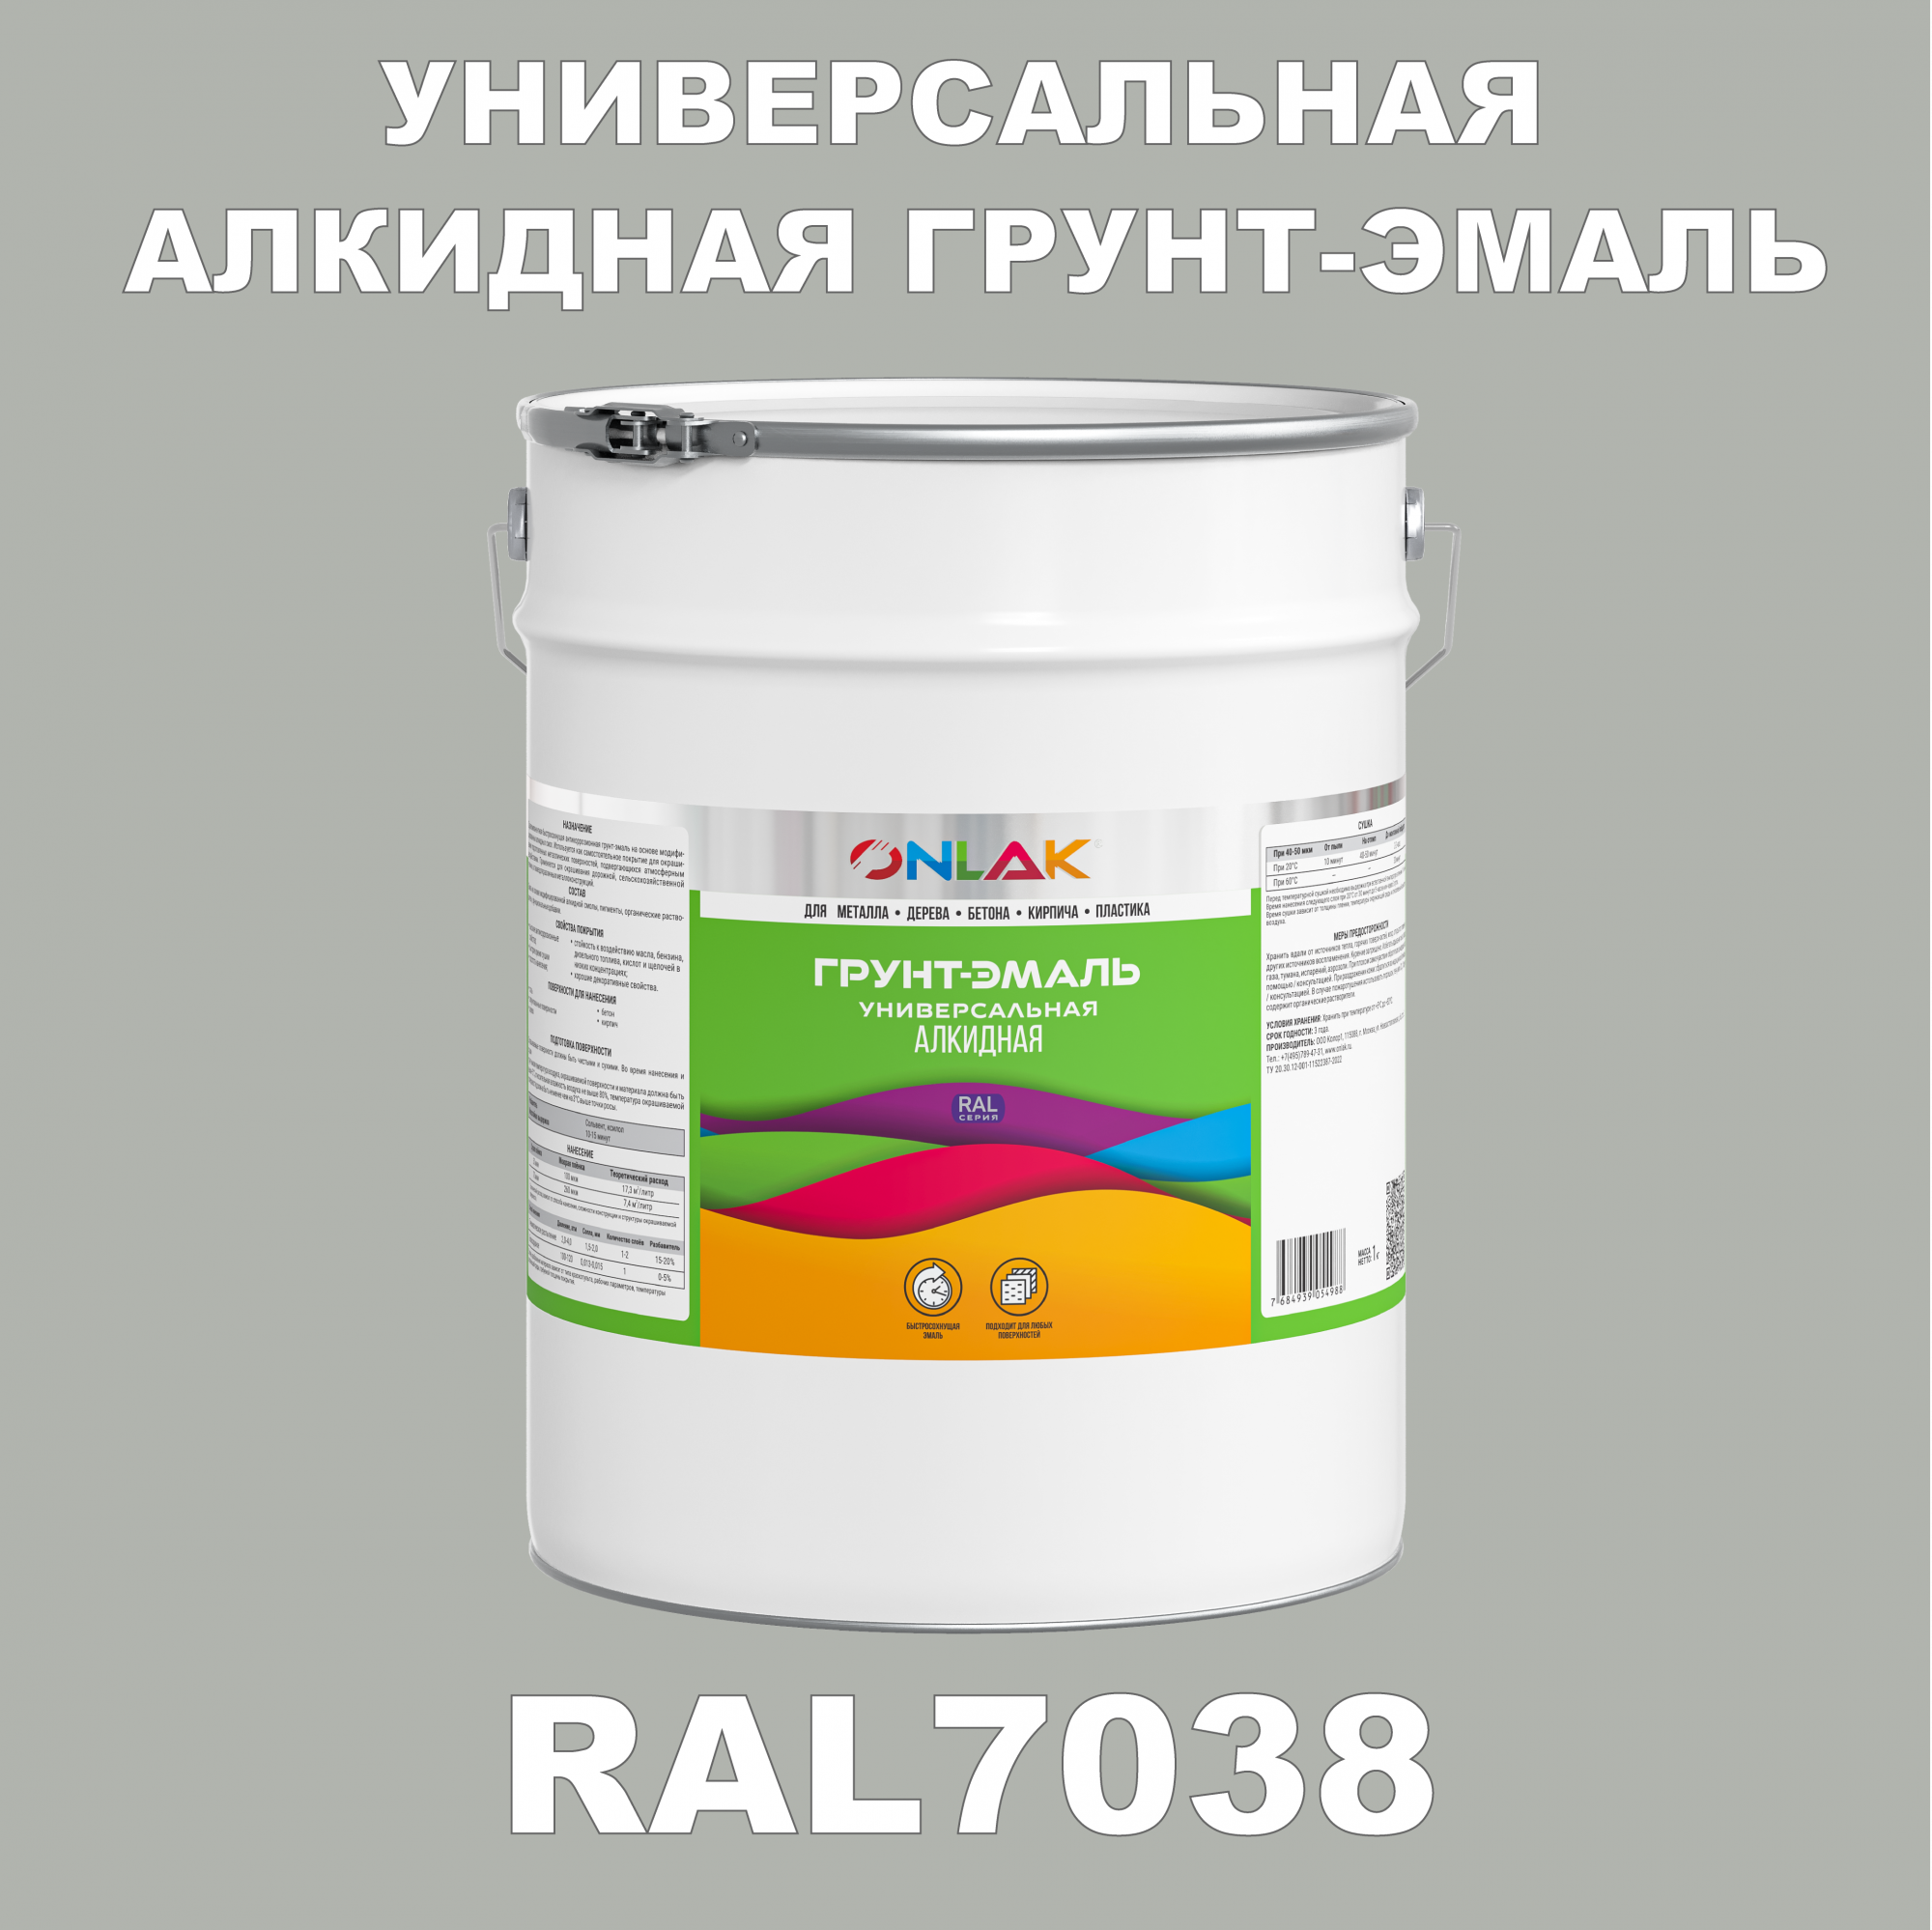 Грунт-эмаль ONLAK 1К RAL7038 антикоррозионная алкидная по металлу по ржавчине 20 кг грунт эмаль yollo по ржавчине алкидная синяя 0 9 кг